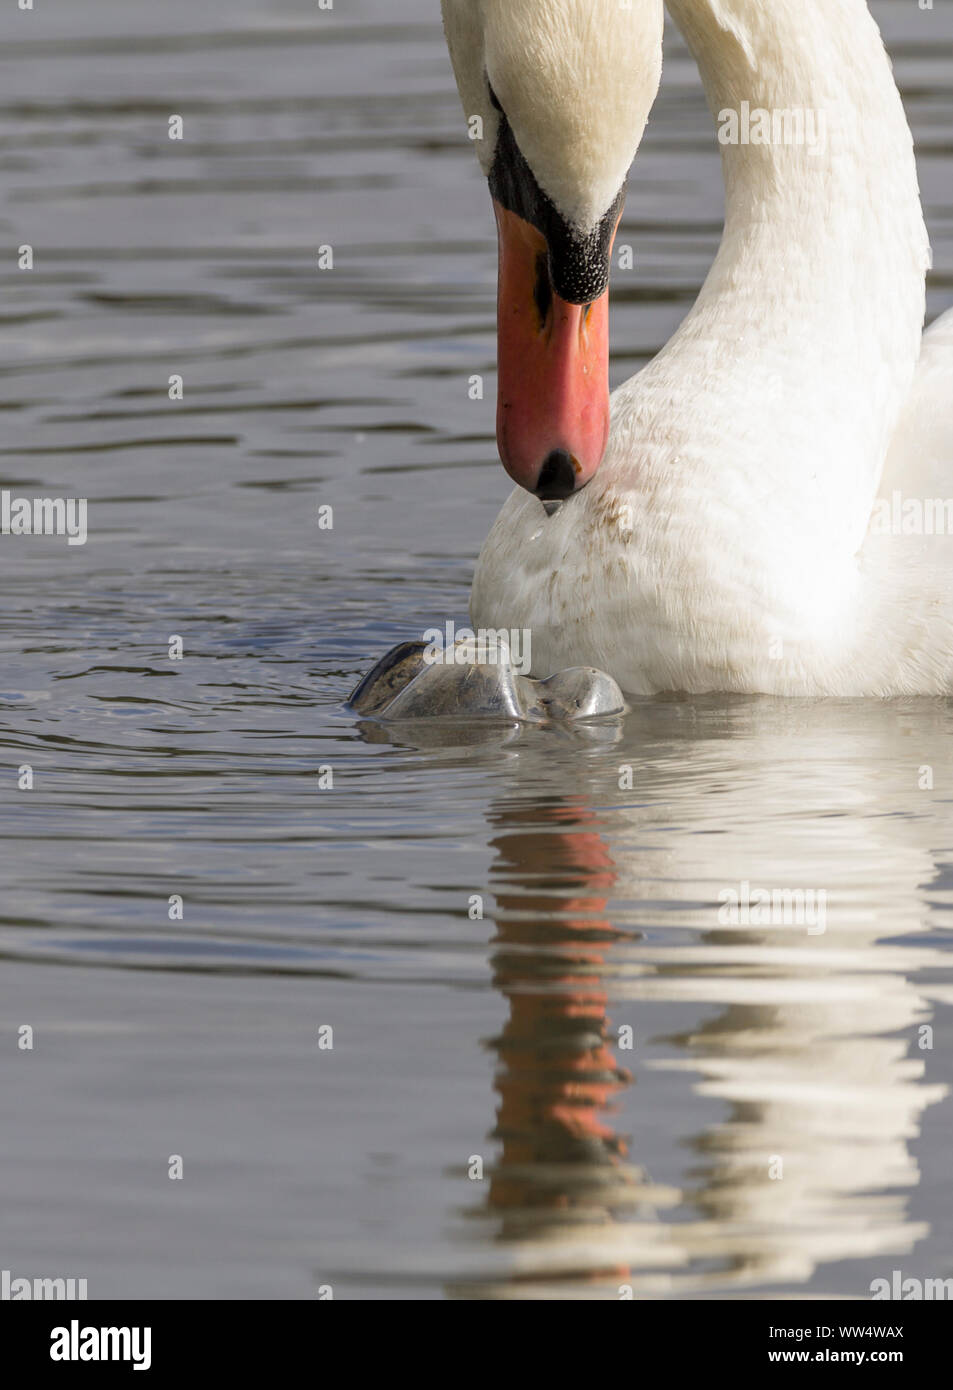 Mute swan (Cygnus olor) et de déchets plastiques. Bouteille en plastique renversé dans l'eau attire l'attention d'un cygne sauvage en bouche  + la pollution plastique branlante Banque D'Images